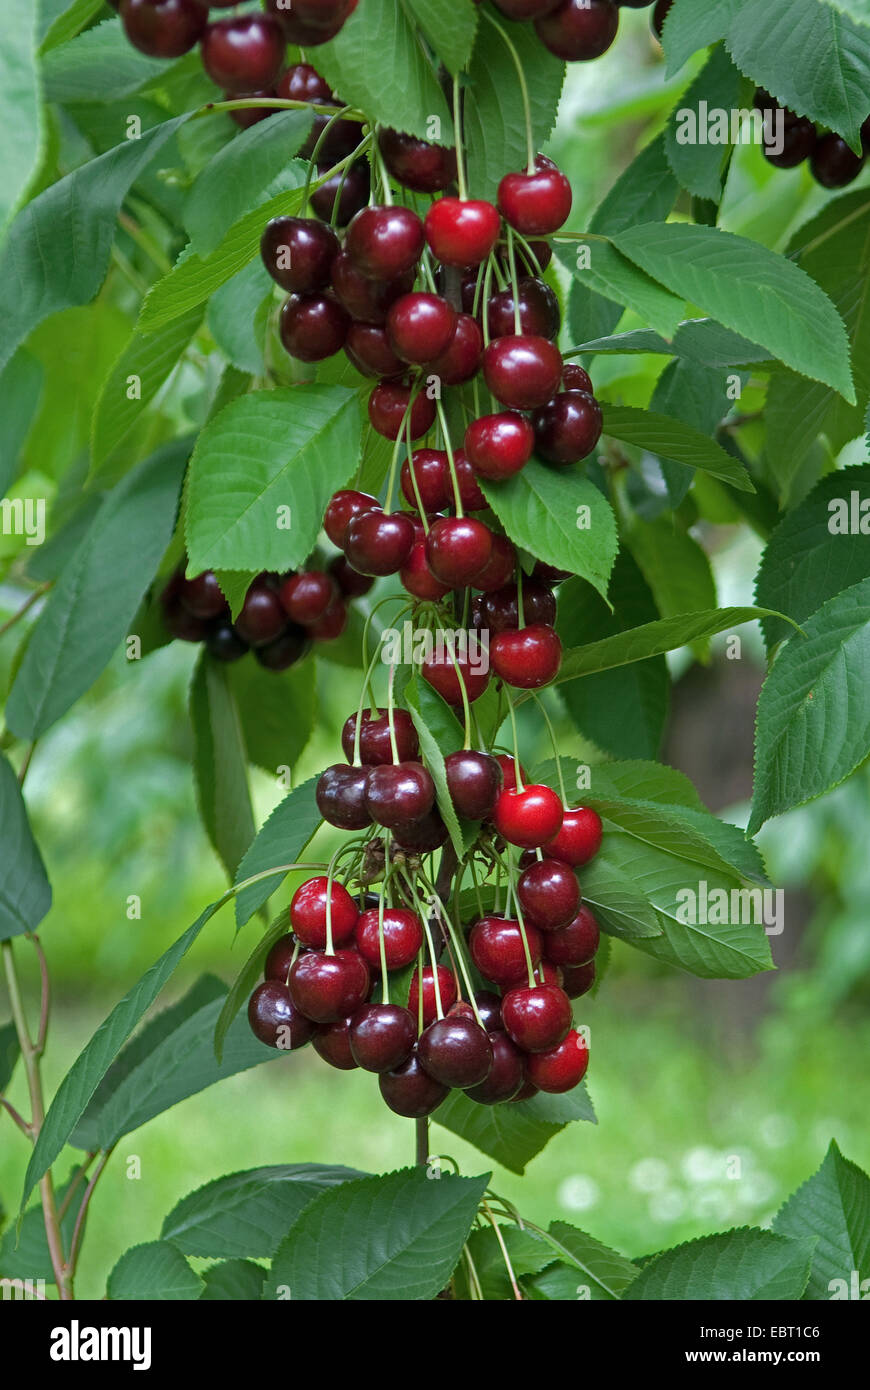 Cherry Tree, Sweet cherry (Prunus avium '' Namati, Prunus avium Namati), le cultivar Namati, les cerises sur un arbre Banque D'Images